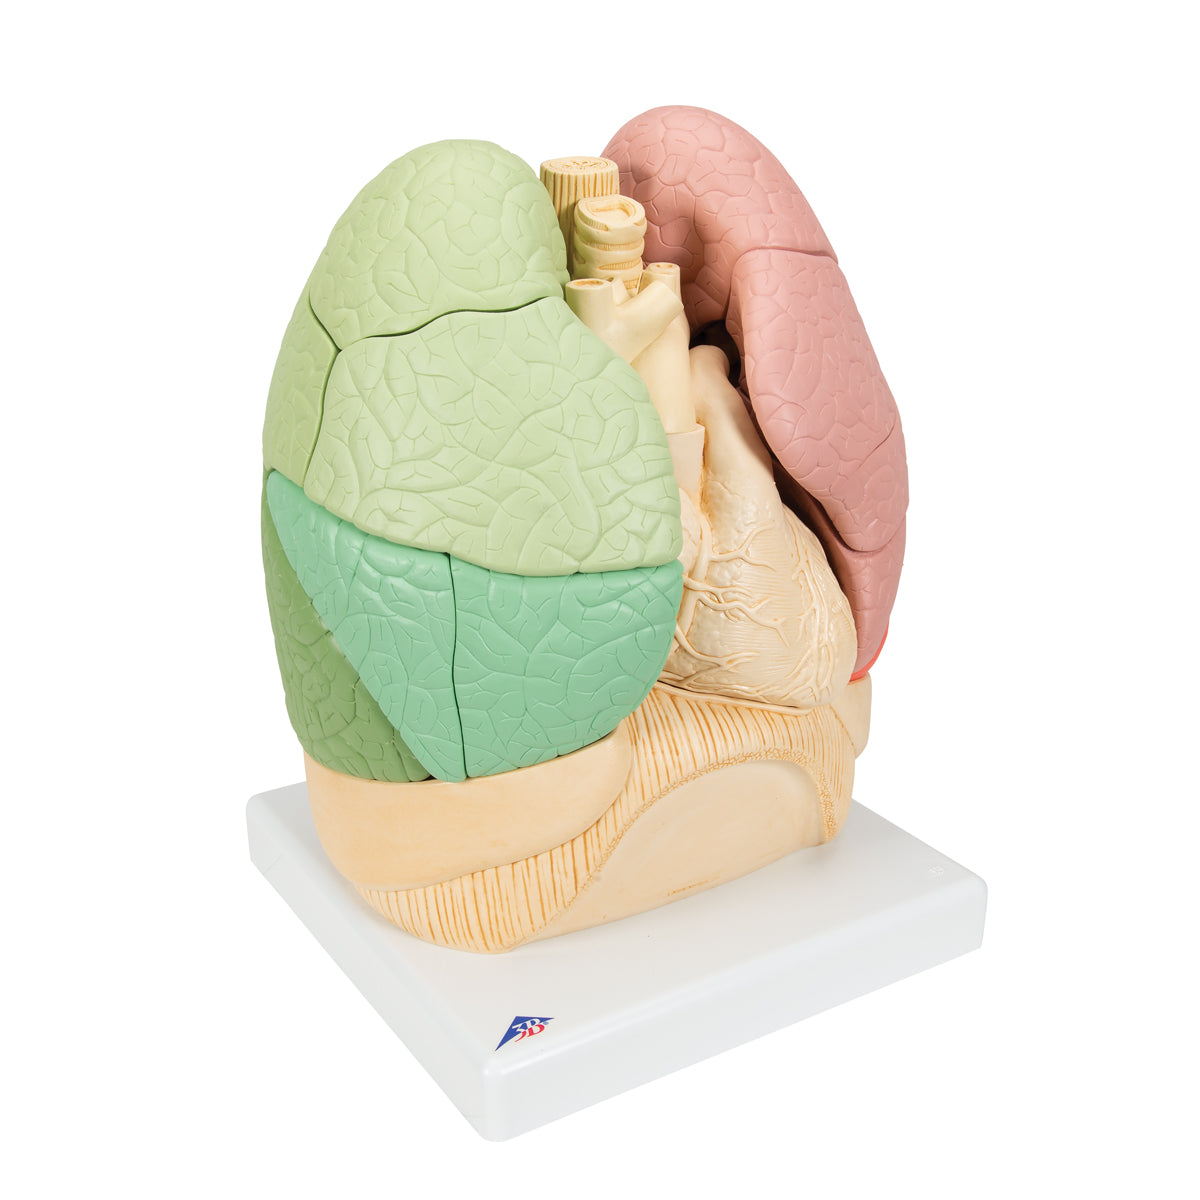 Lungemodel med hjerte og bronkier, opdelt i segmenter